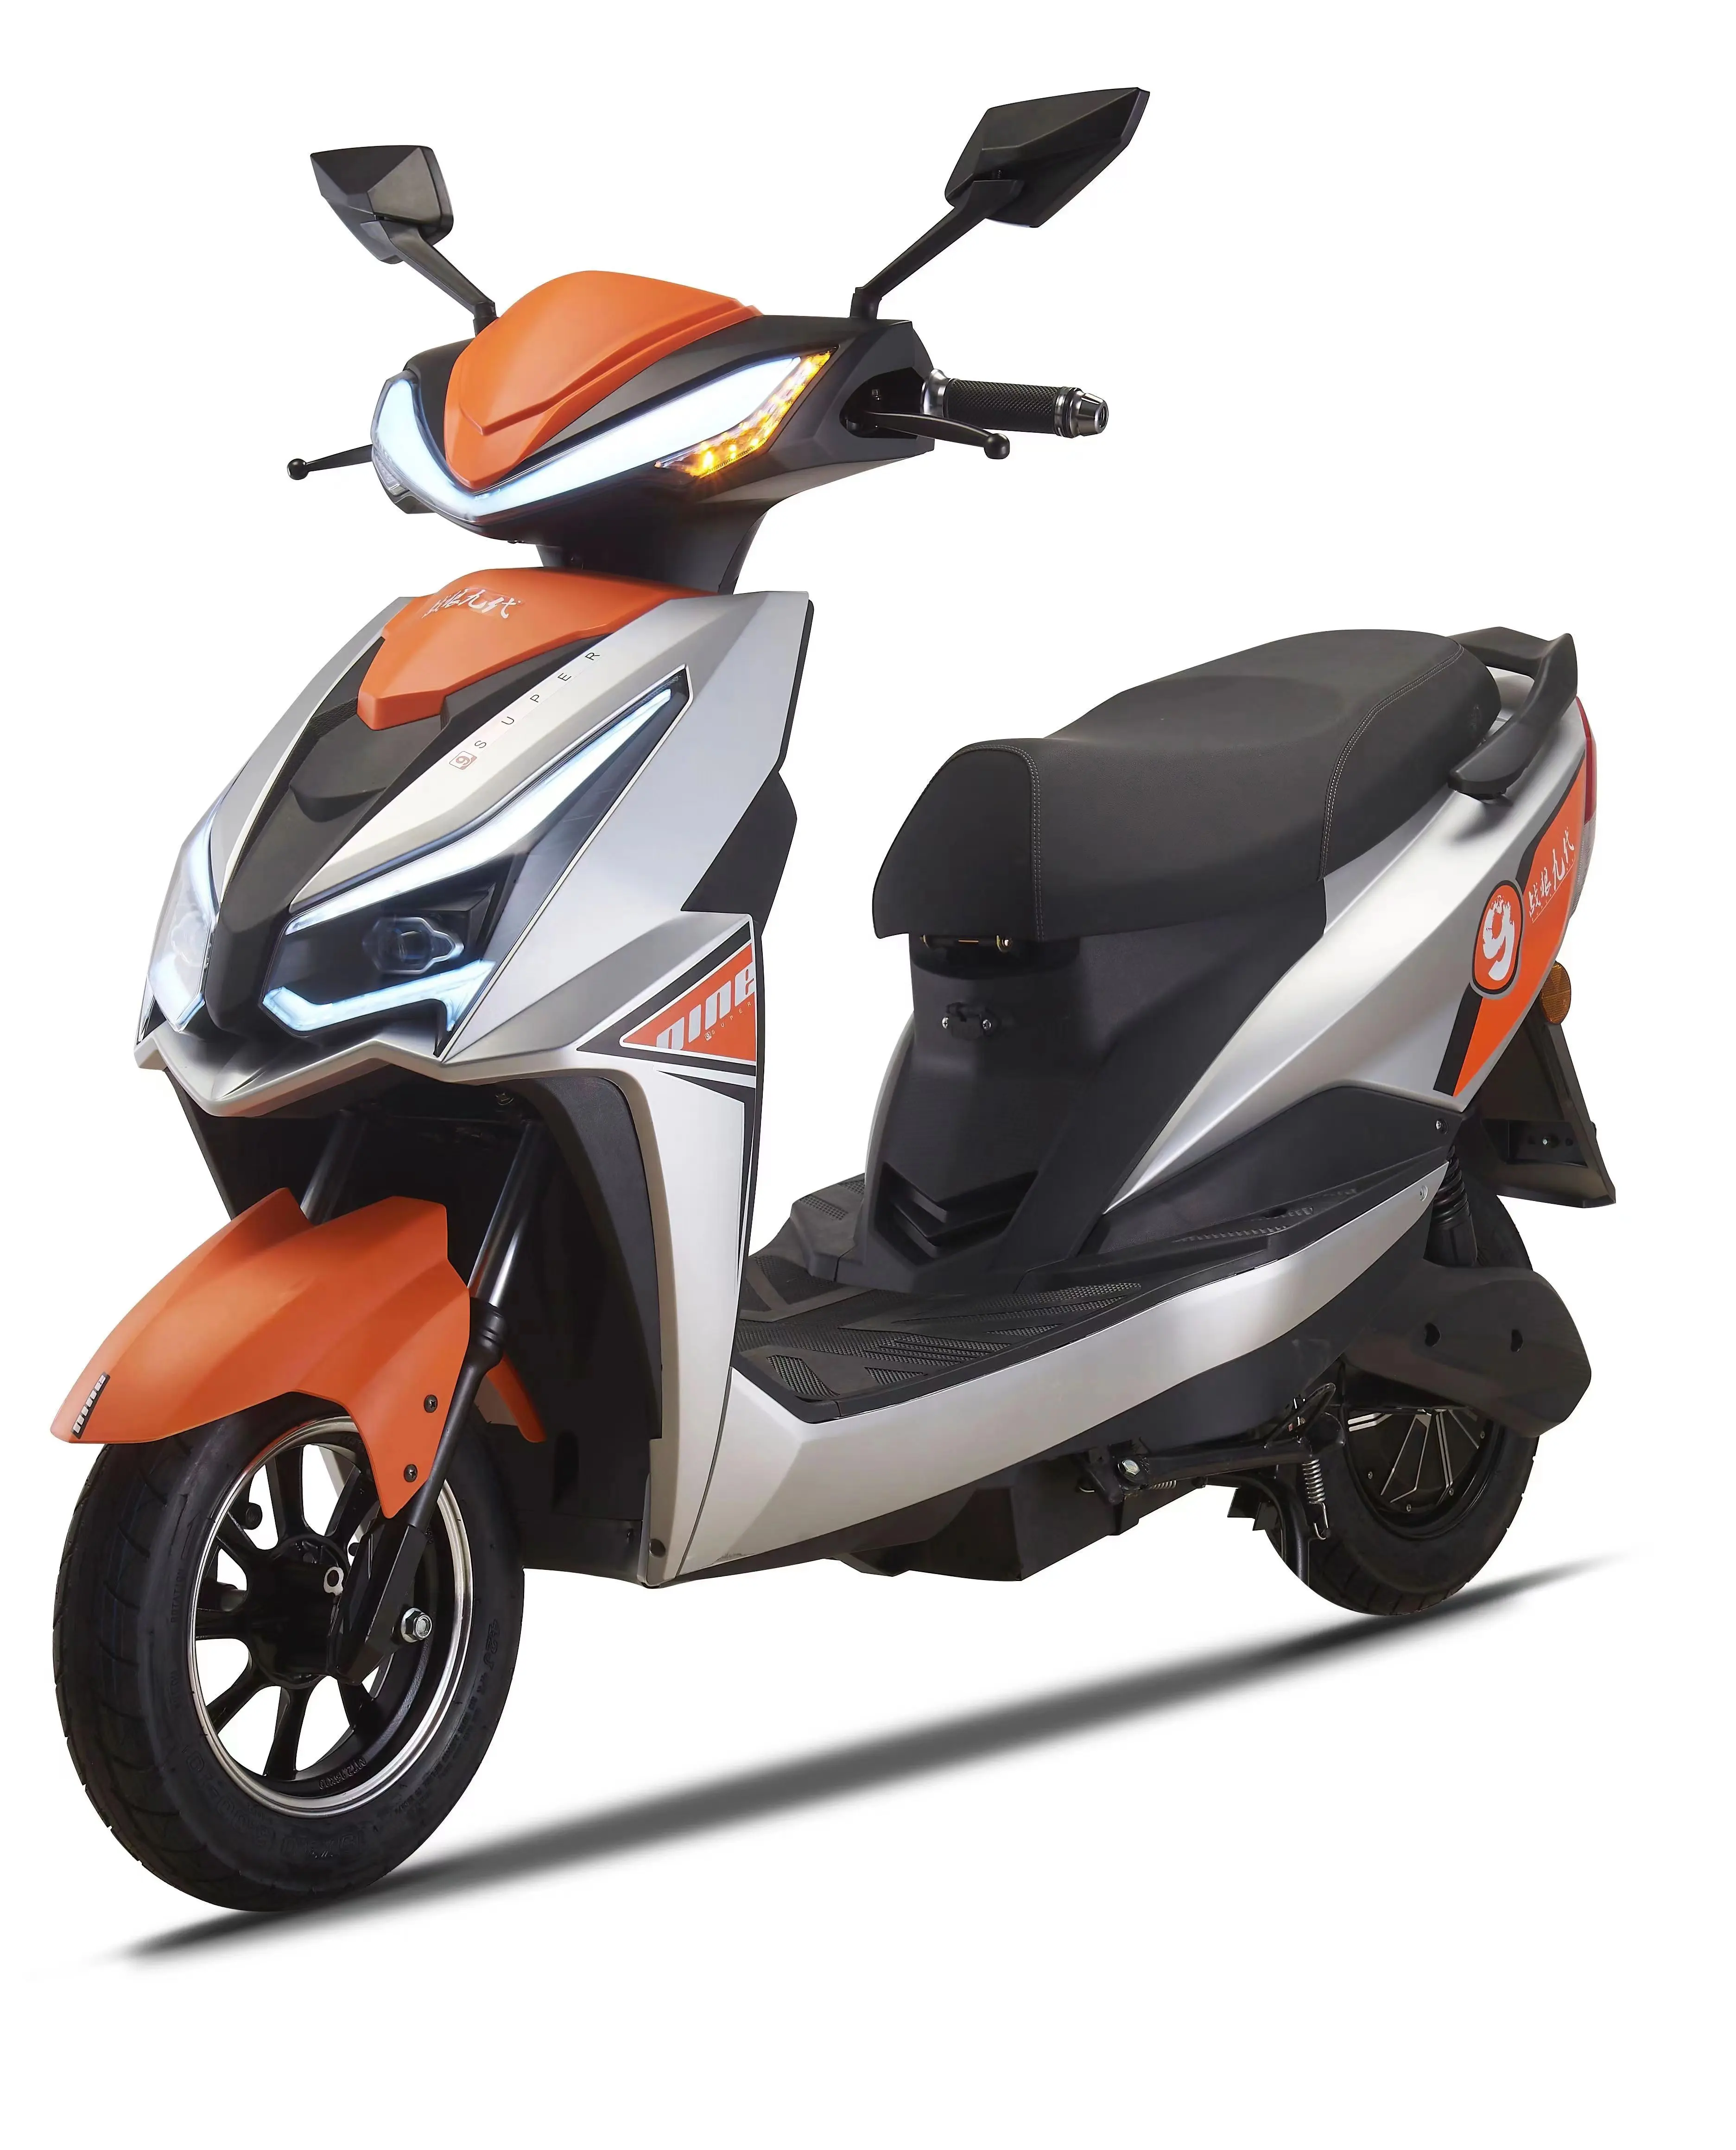 2 tekerlekli 2 koltuk 2000 watt hub motor elektrikli motosiklet scooter bisiklet çin scooter mopedler